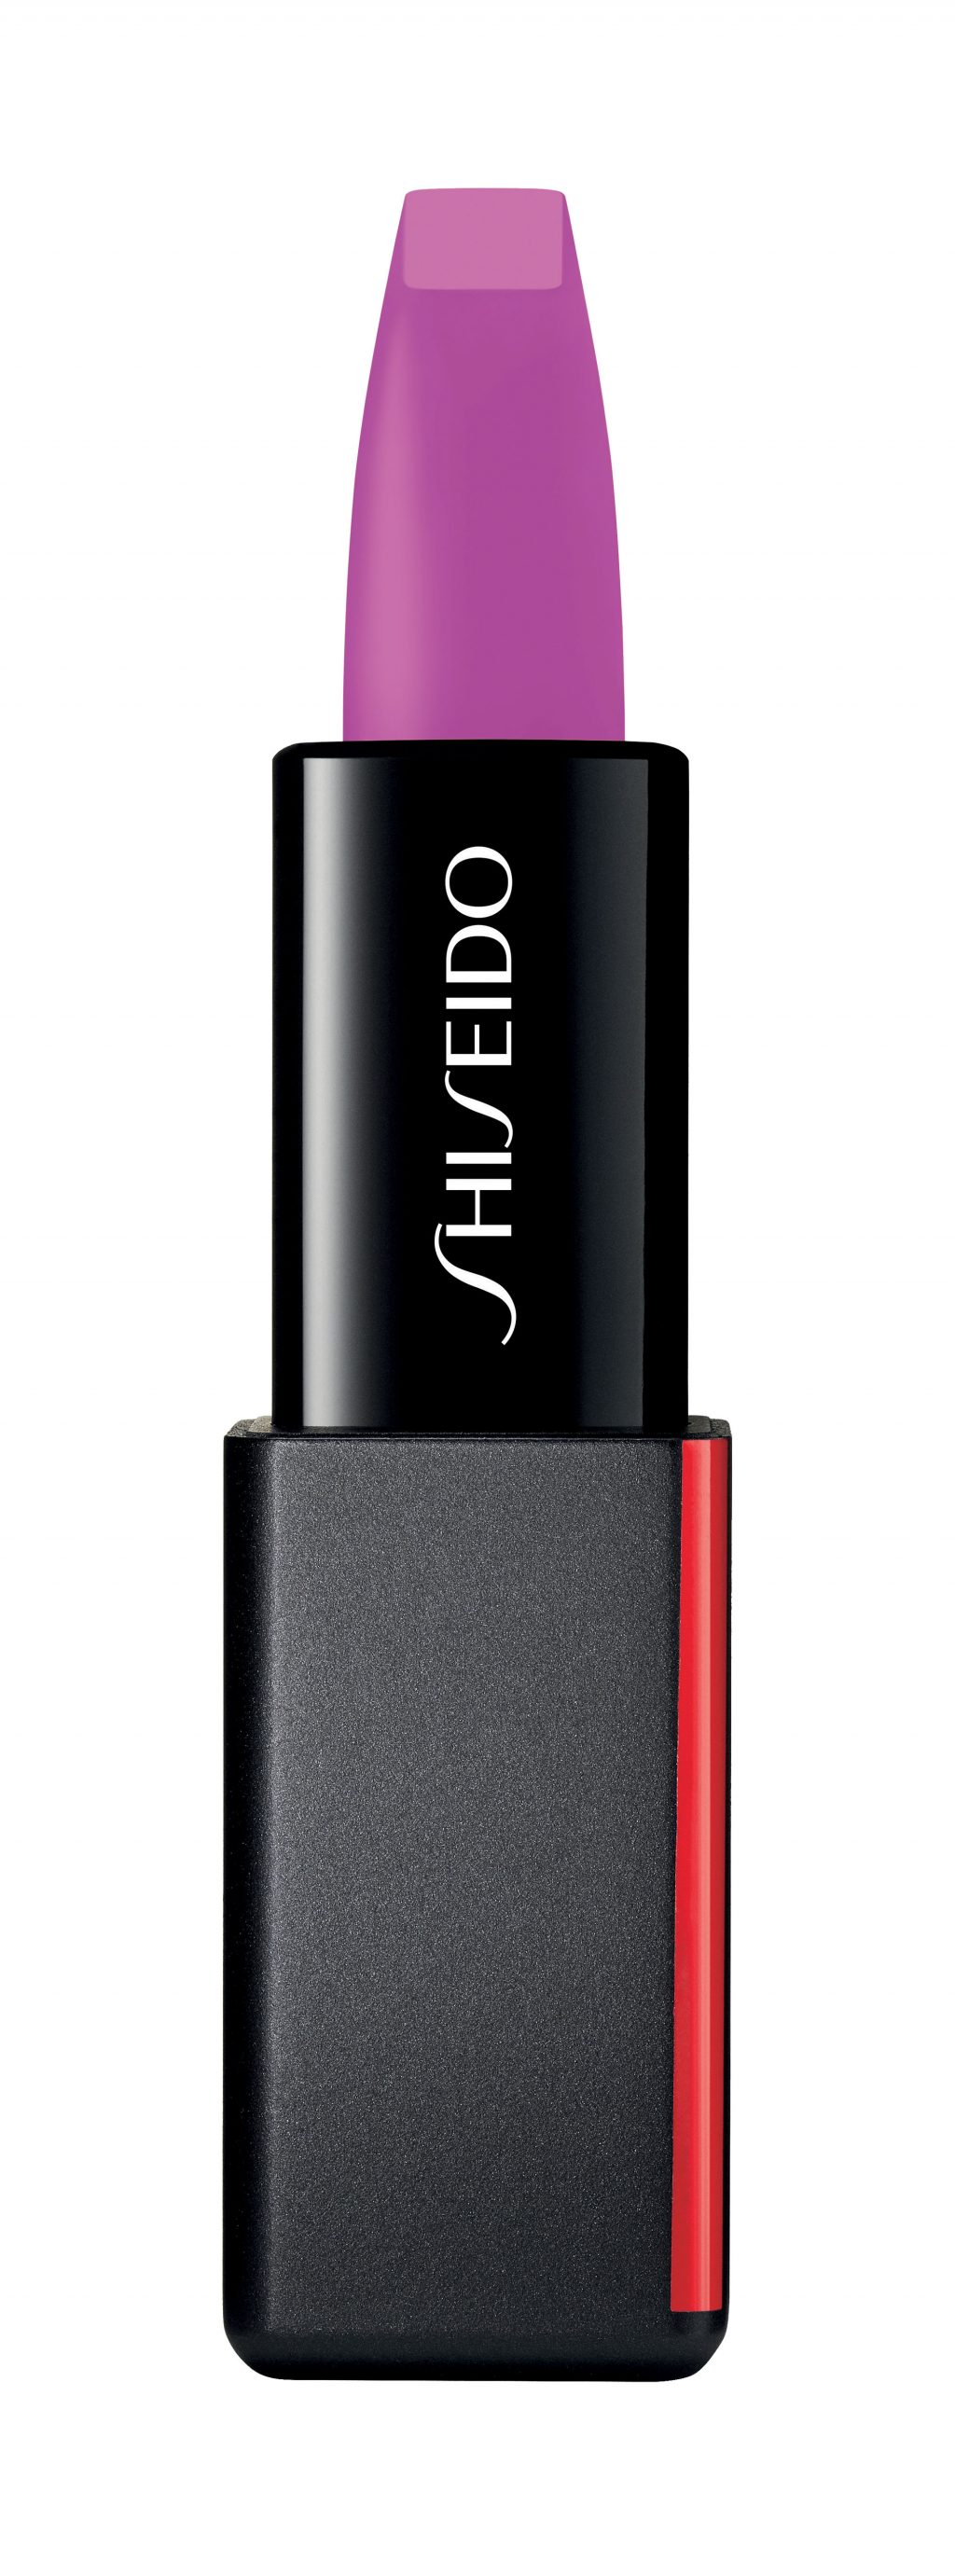 son môi Modernmatte Powder Shiseido 